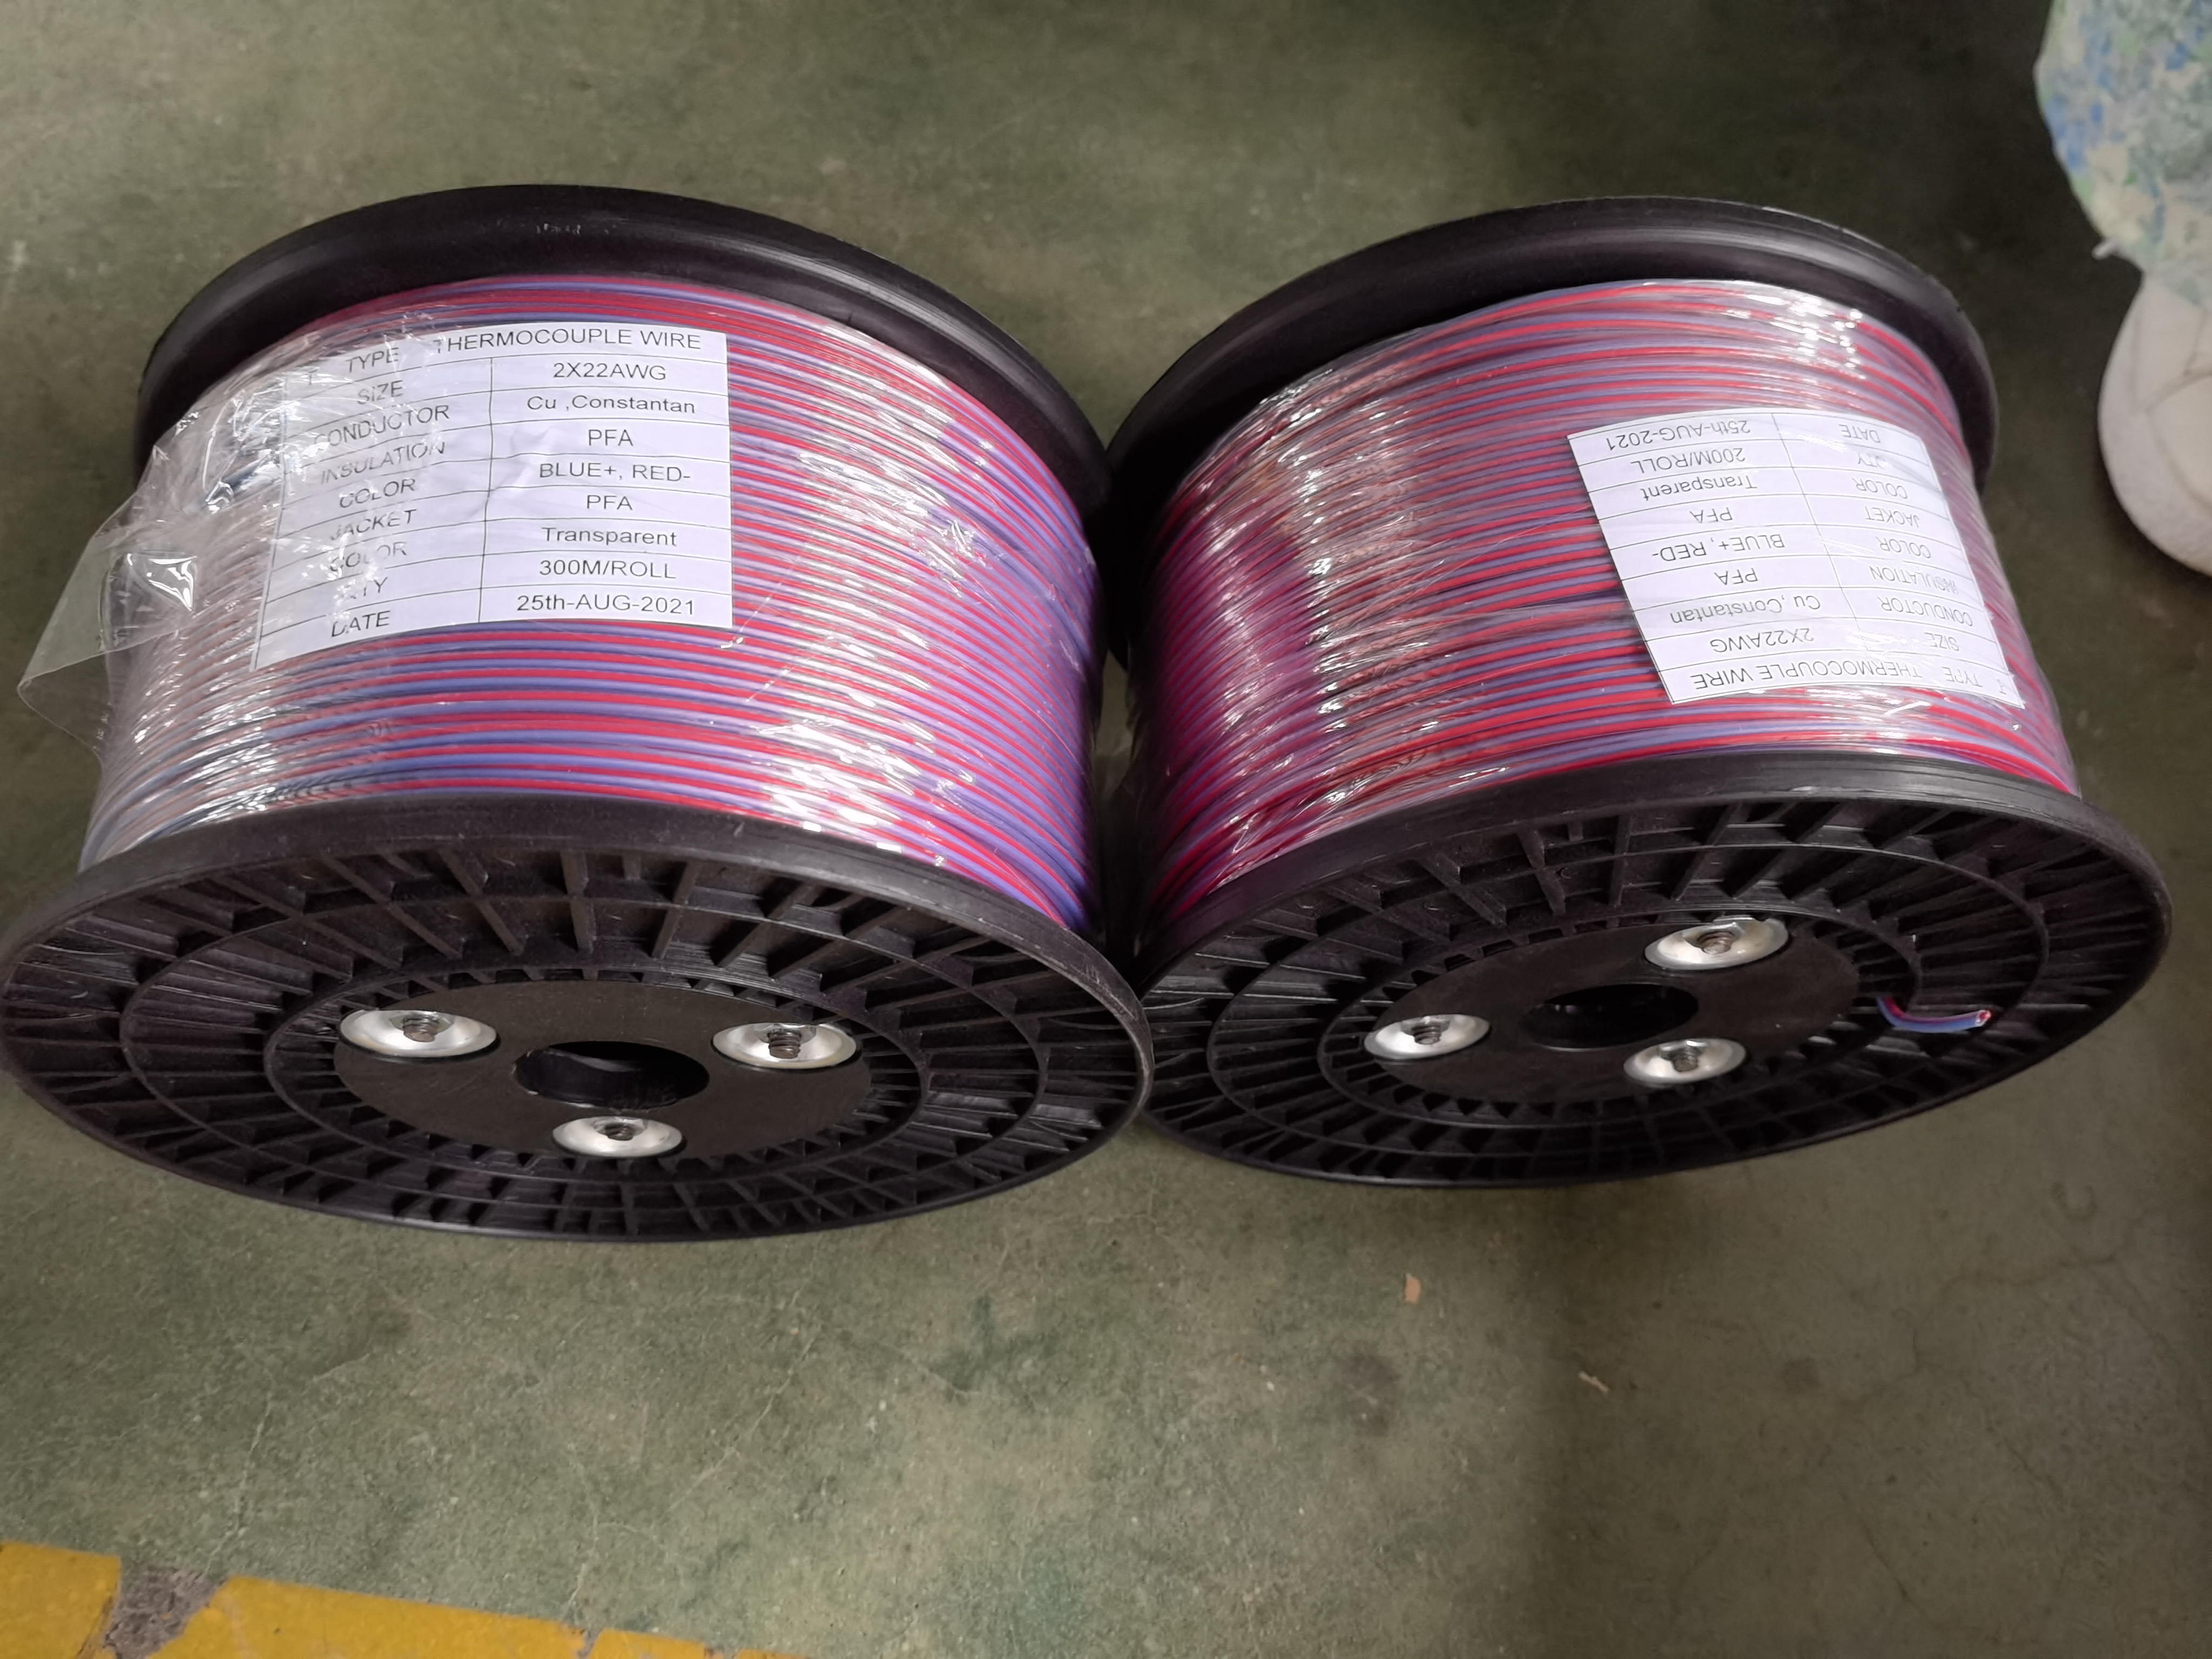 Fábrica de Cables de Fongming de Yangzhou: Conocimiento de cables resistentes a altas temperaturas